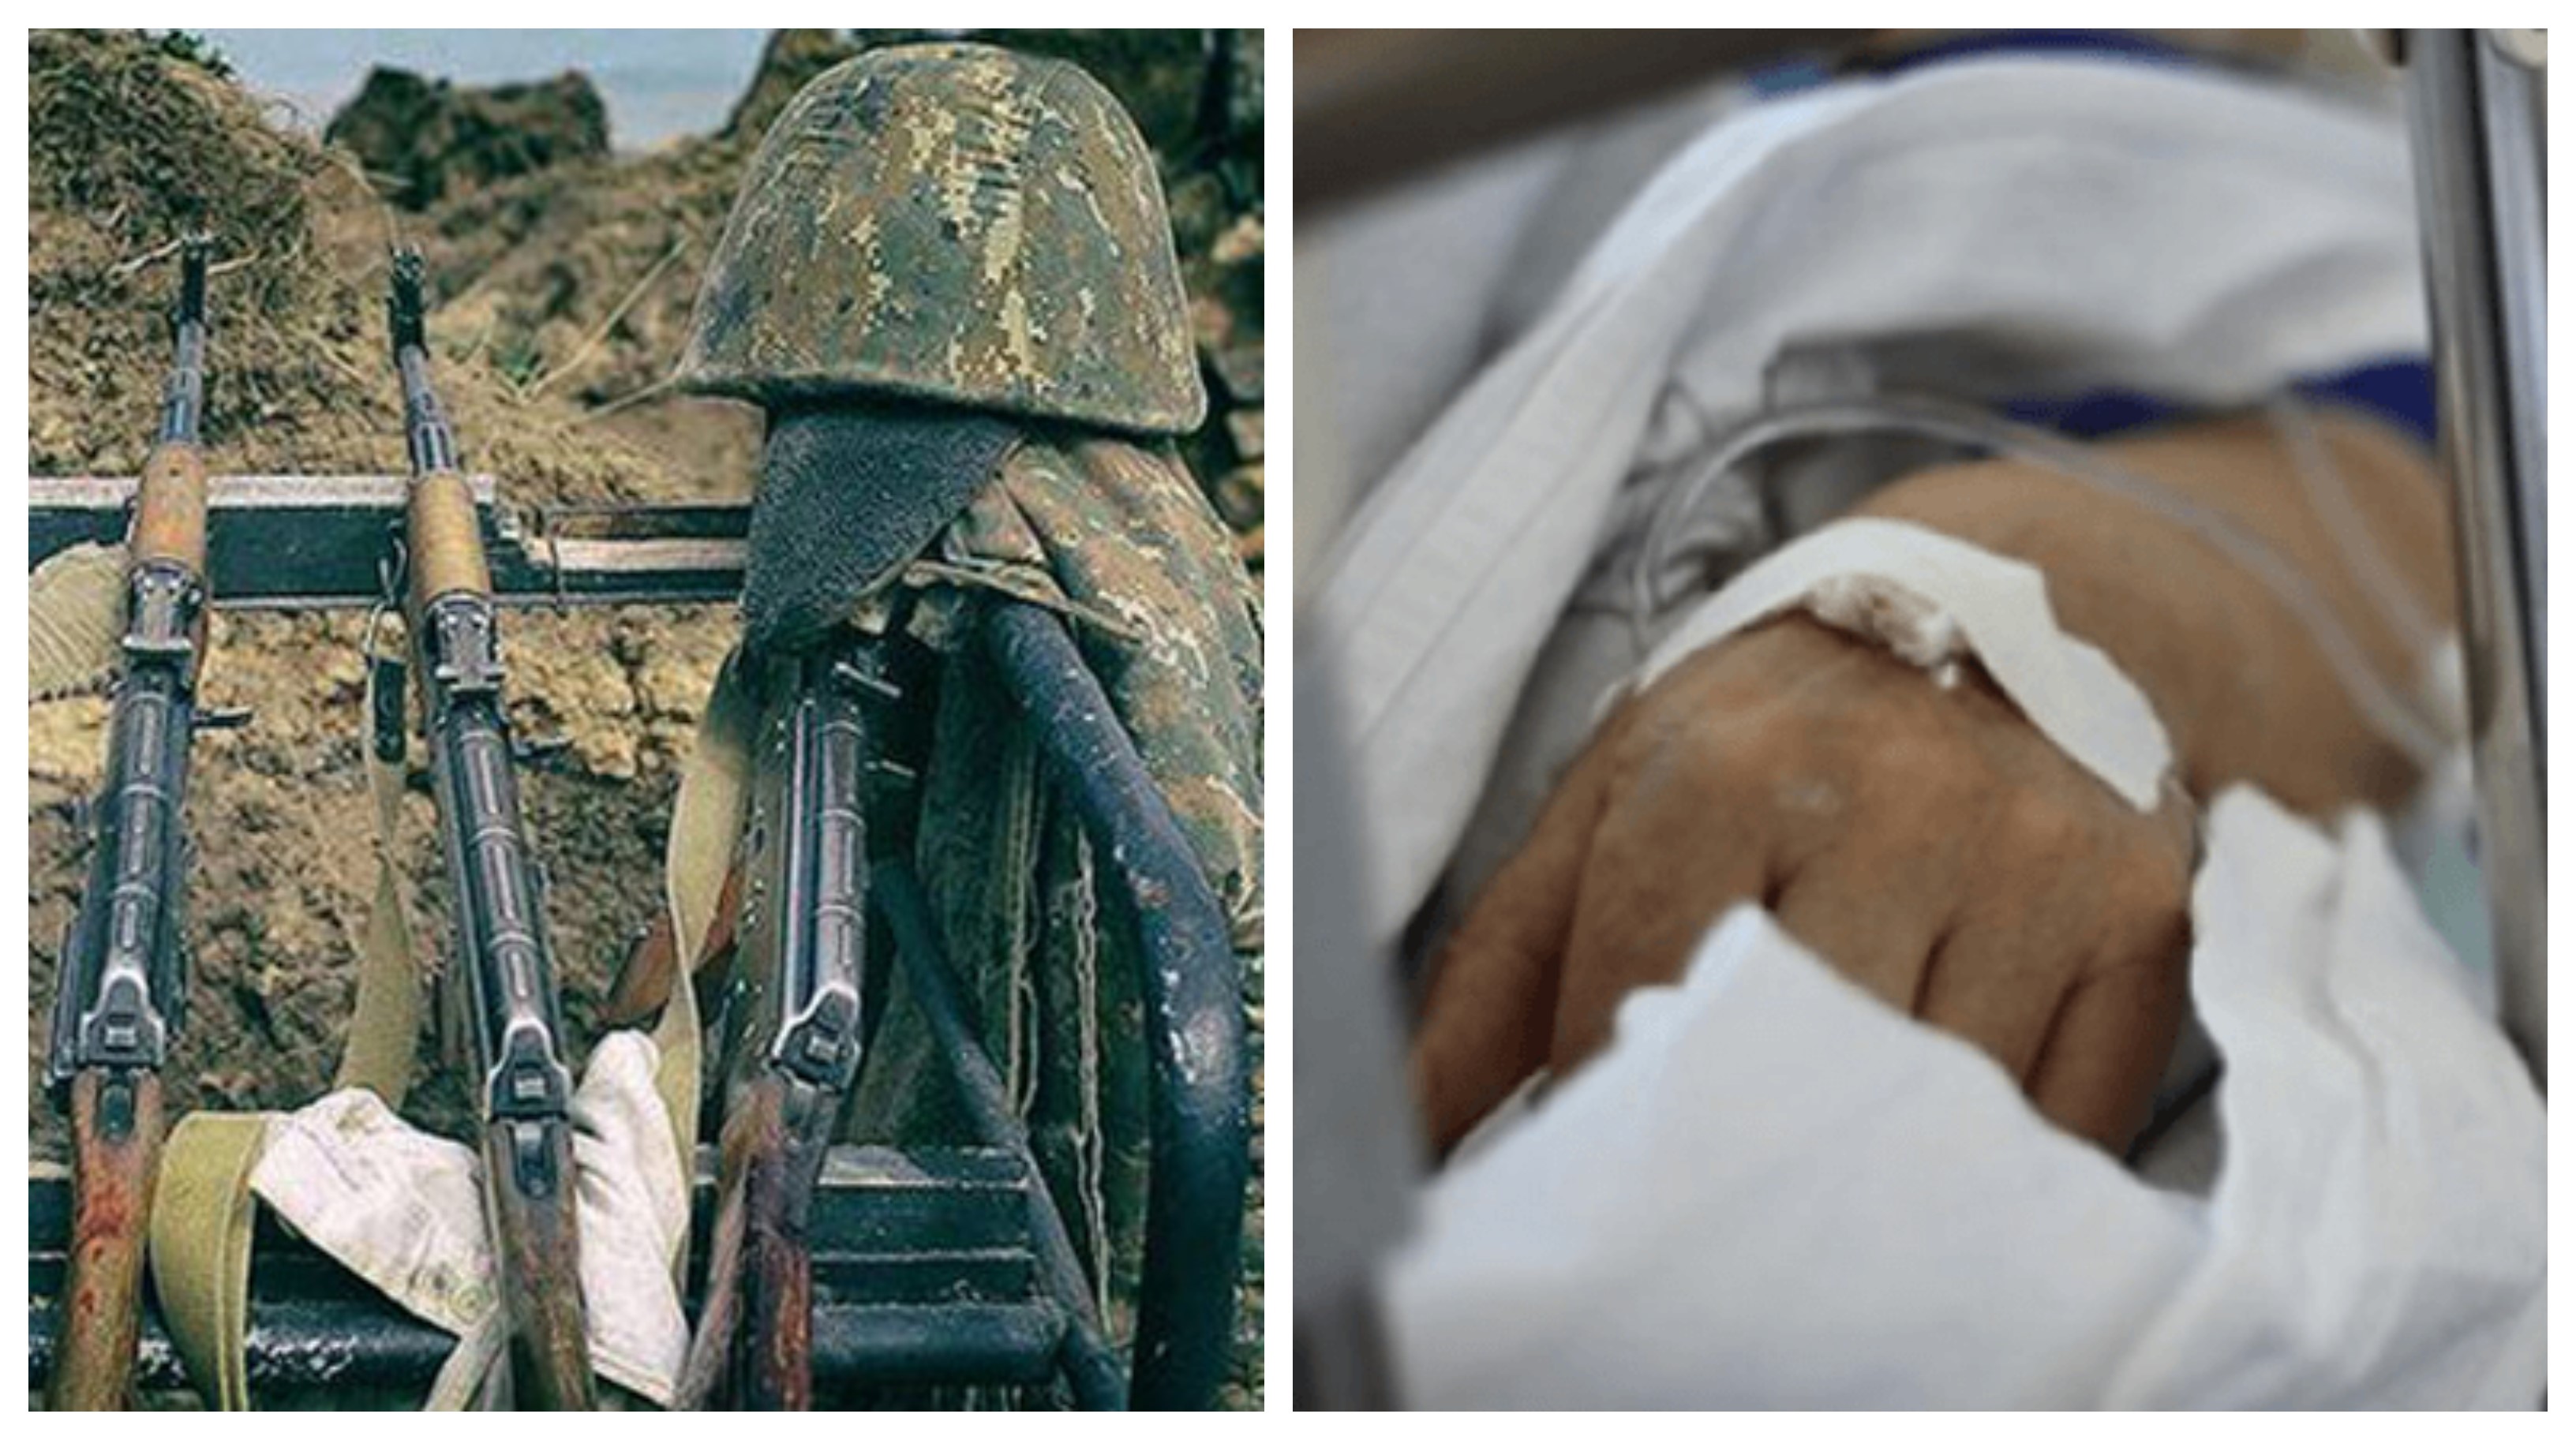 Ադրբեջանական կրակոցներից վիրավորում ստացած 3 զինծառայողների վիճակը բավարար է